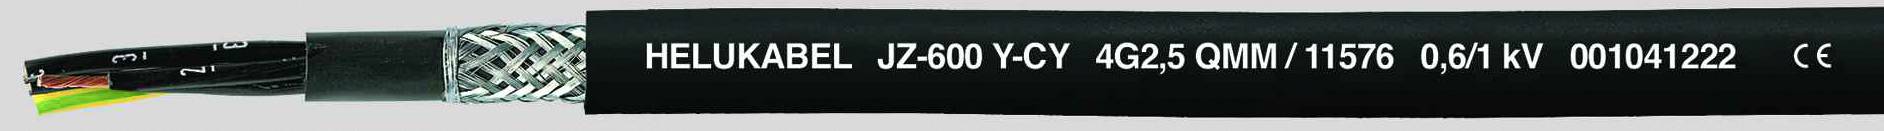 HELUKABEL JZ-600-Y-CY Steuerleitung 5 G 1 mm² Schwarz 11519 100 m